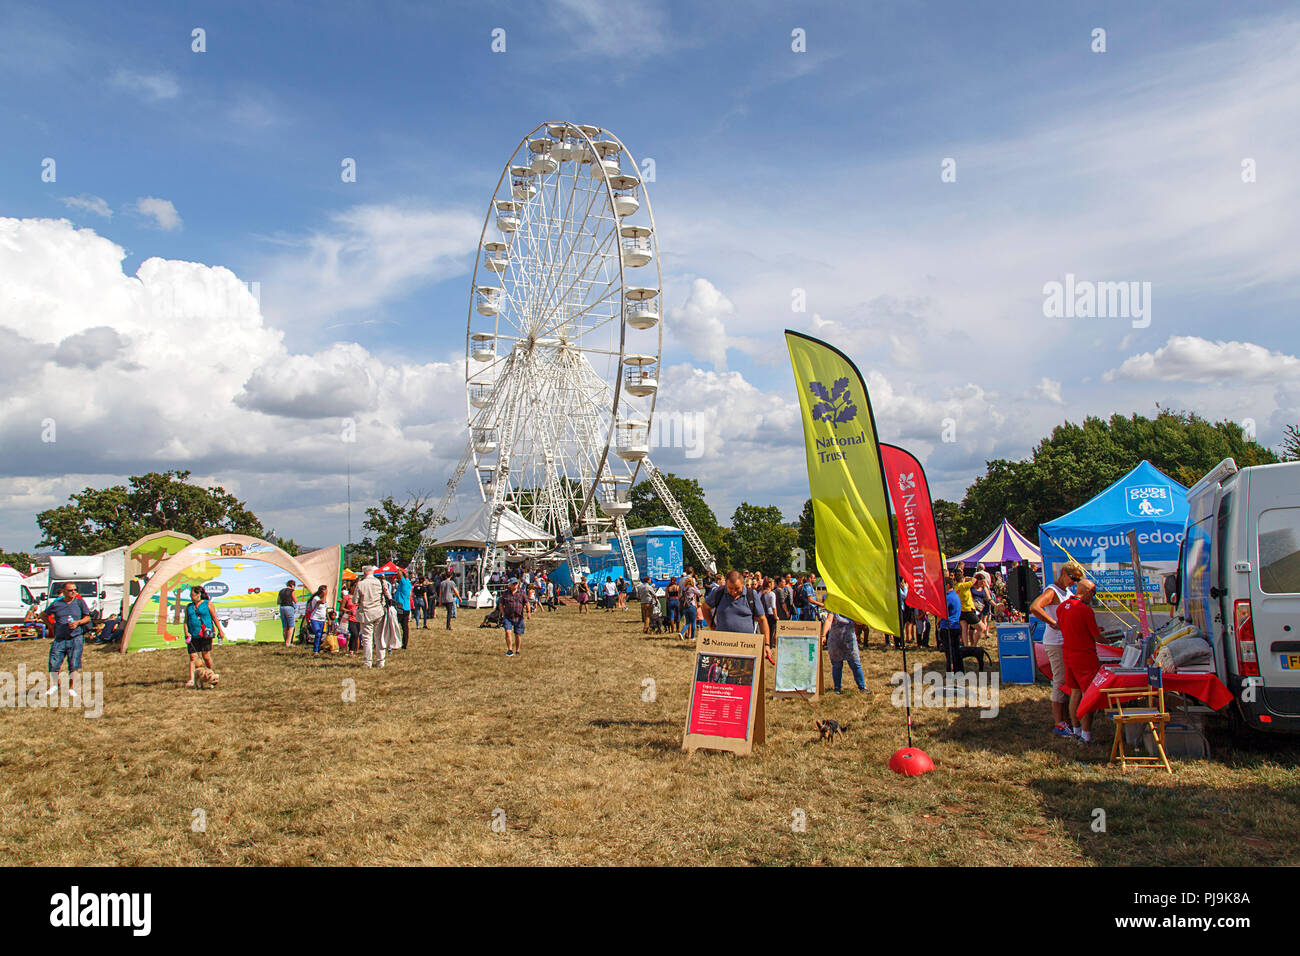 Bristol, UK: August 09, 2018: Touristen an der Bristol International Balloon Fiesta - die jährliche Veranstaltung ist Europas größtes Balloon Festival geworden. Stockfoto